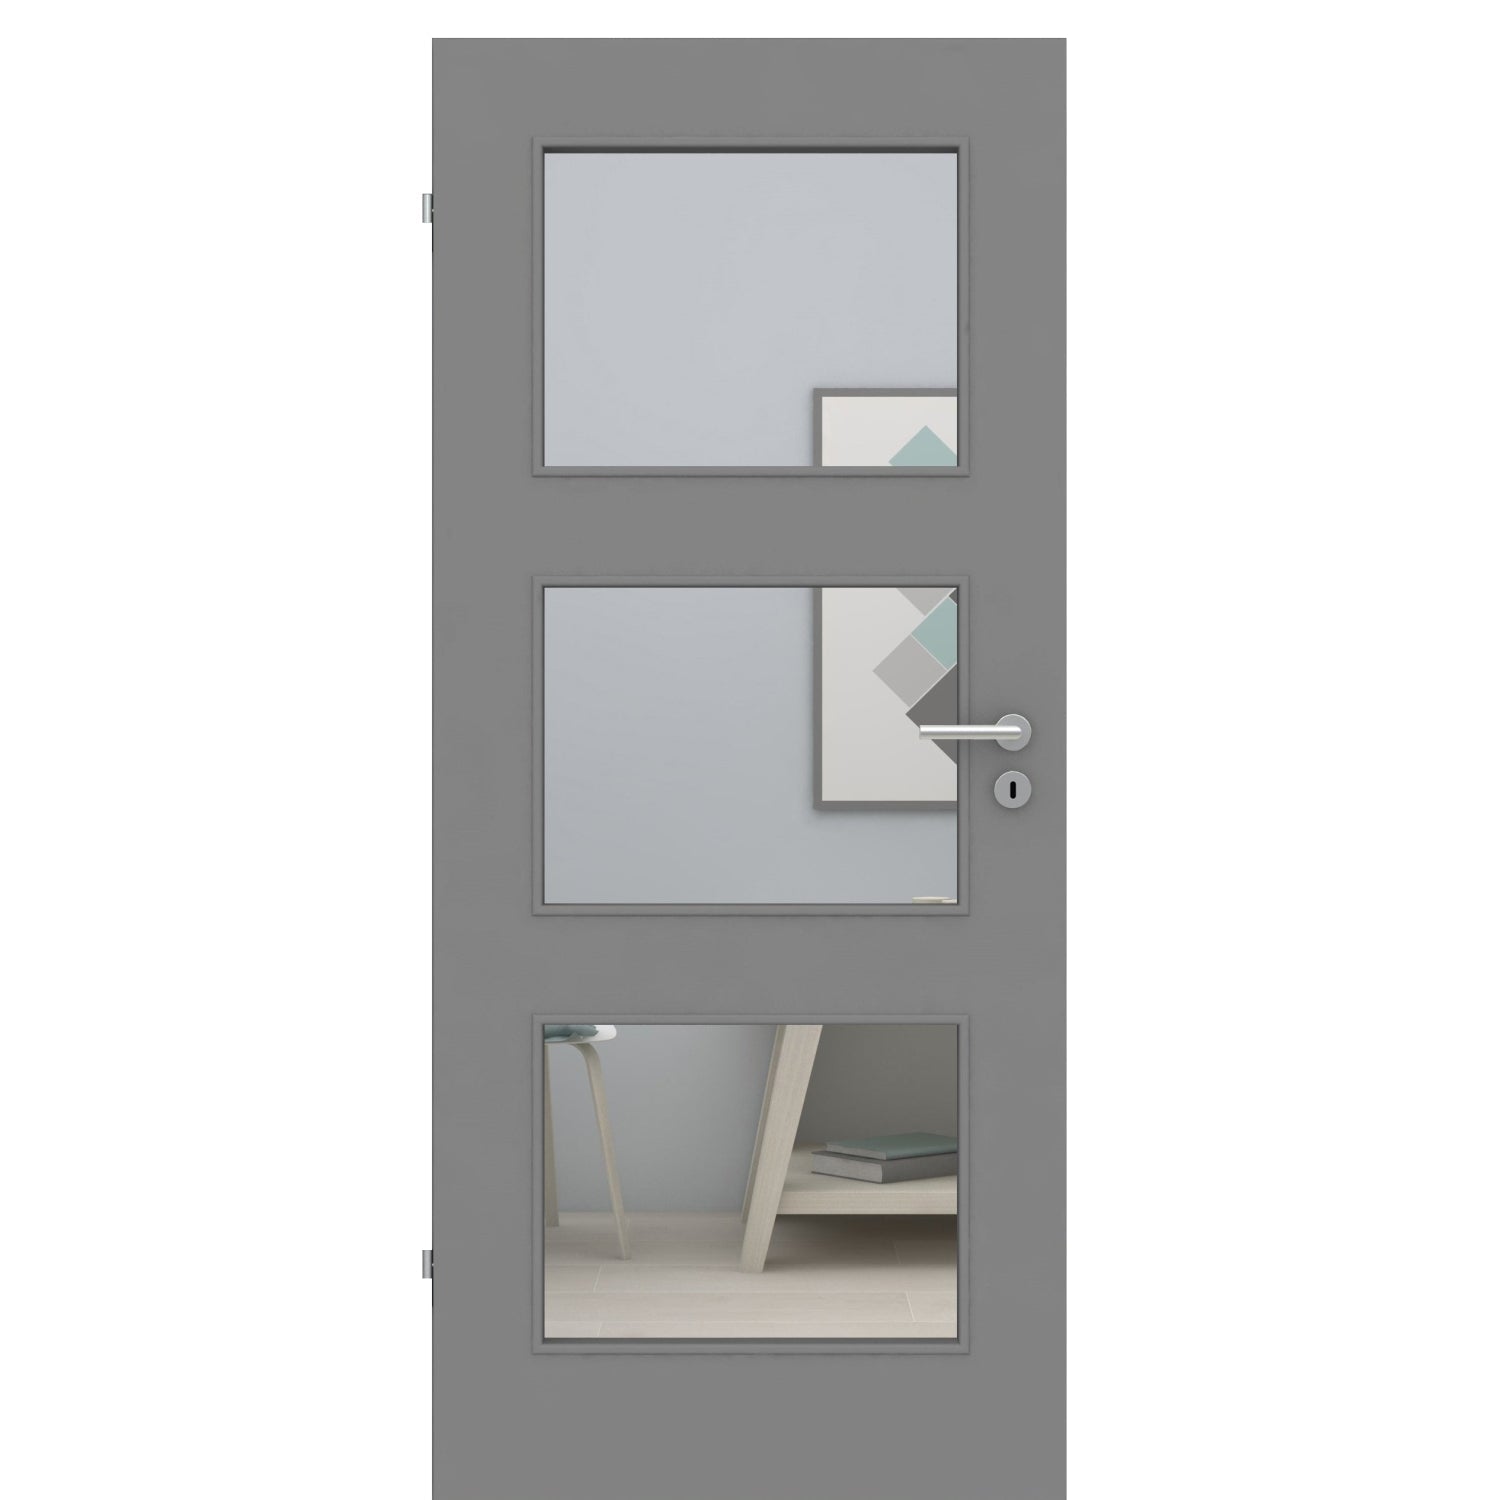 Zimmertür mit Lichtausschnitt grau glatt Designkante - Modell LA3